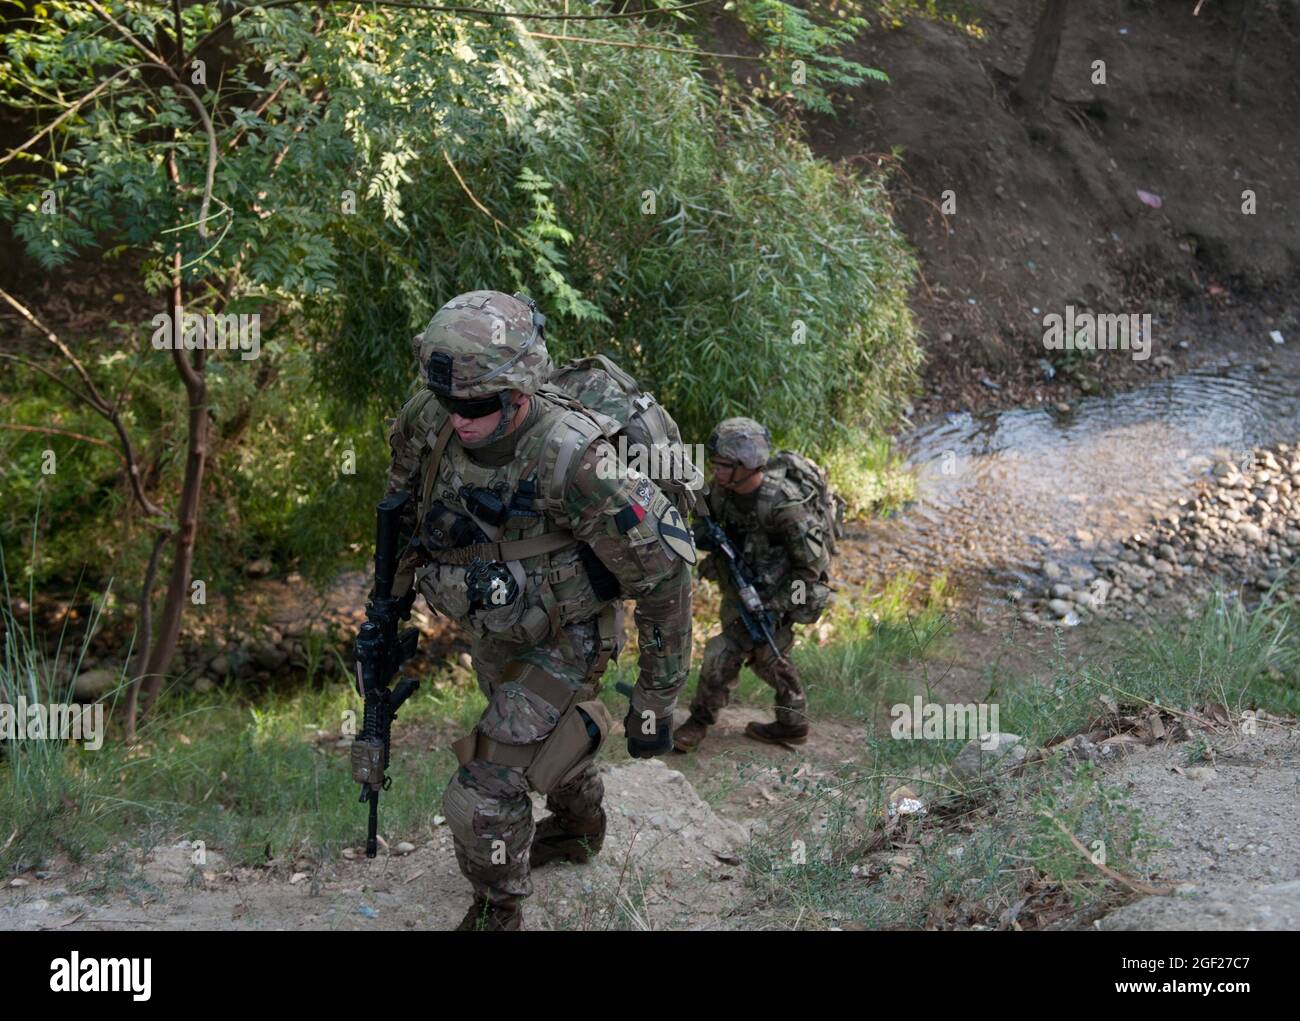 US-Soldaten, die der Bravo-Truppe, der 4. Staffel, dem 9. Kavallerieregiment, der 2. Panzerbrigade-Kampfmannschaft, der 1. Kavallerie-Division zugewiesen wurden, erkämpfen sich während einer Anwesenheitspatrouille um die Vorwärtsoperationsbasis Fenty in der Provinz Nangarhar, Afghanistan, am 22. August 2013 die Seite einer Schlucht Der Zweck der morgendlichen Patrouille war es, die Sicherheit von Fentys Umkreis zu überprüfen und die lokale Bevölkerung zu engagieren. (USA Foto der Armee-Nationalgarde von Sgt. Margaret Taylor/Freigegeben) Stockfoto